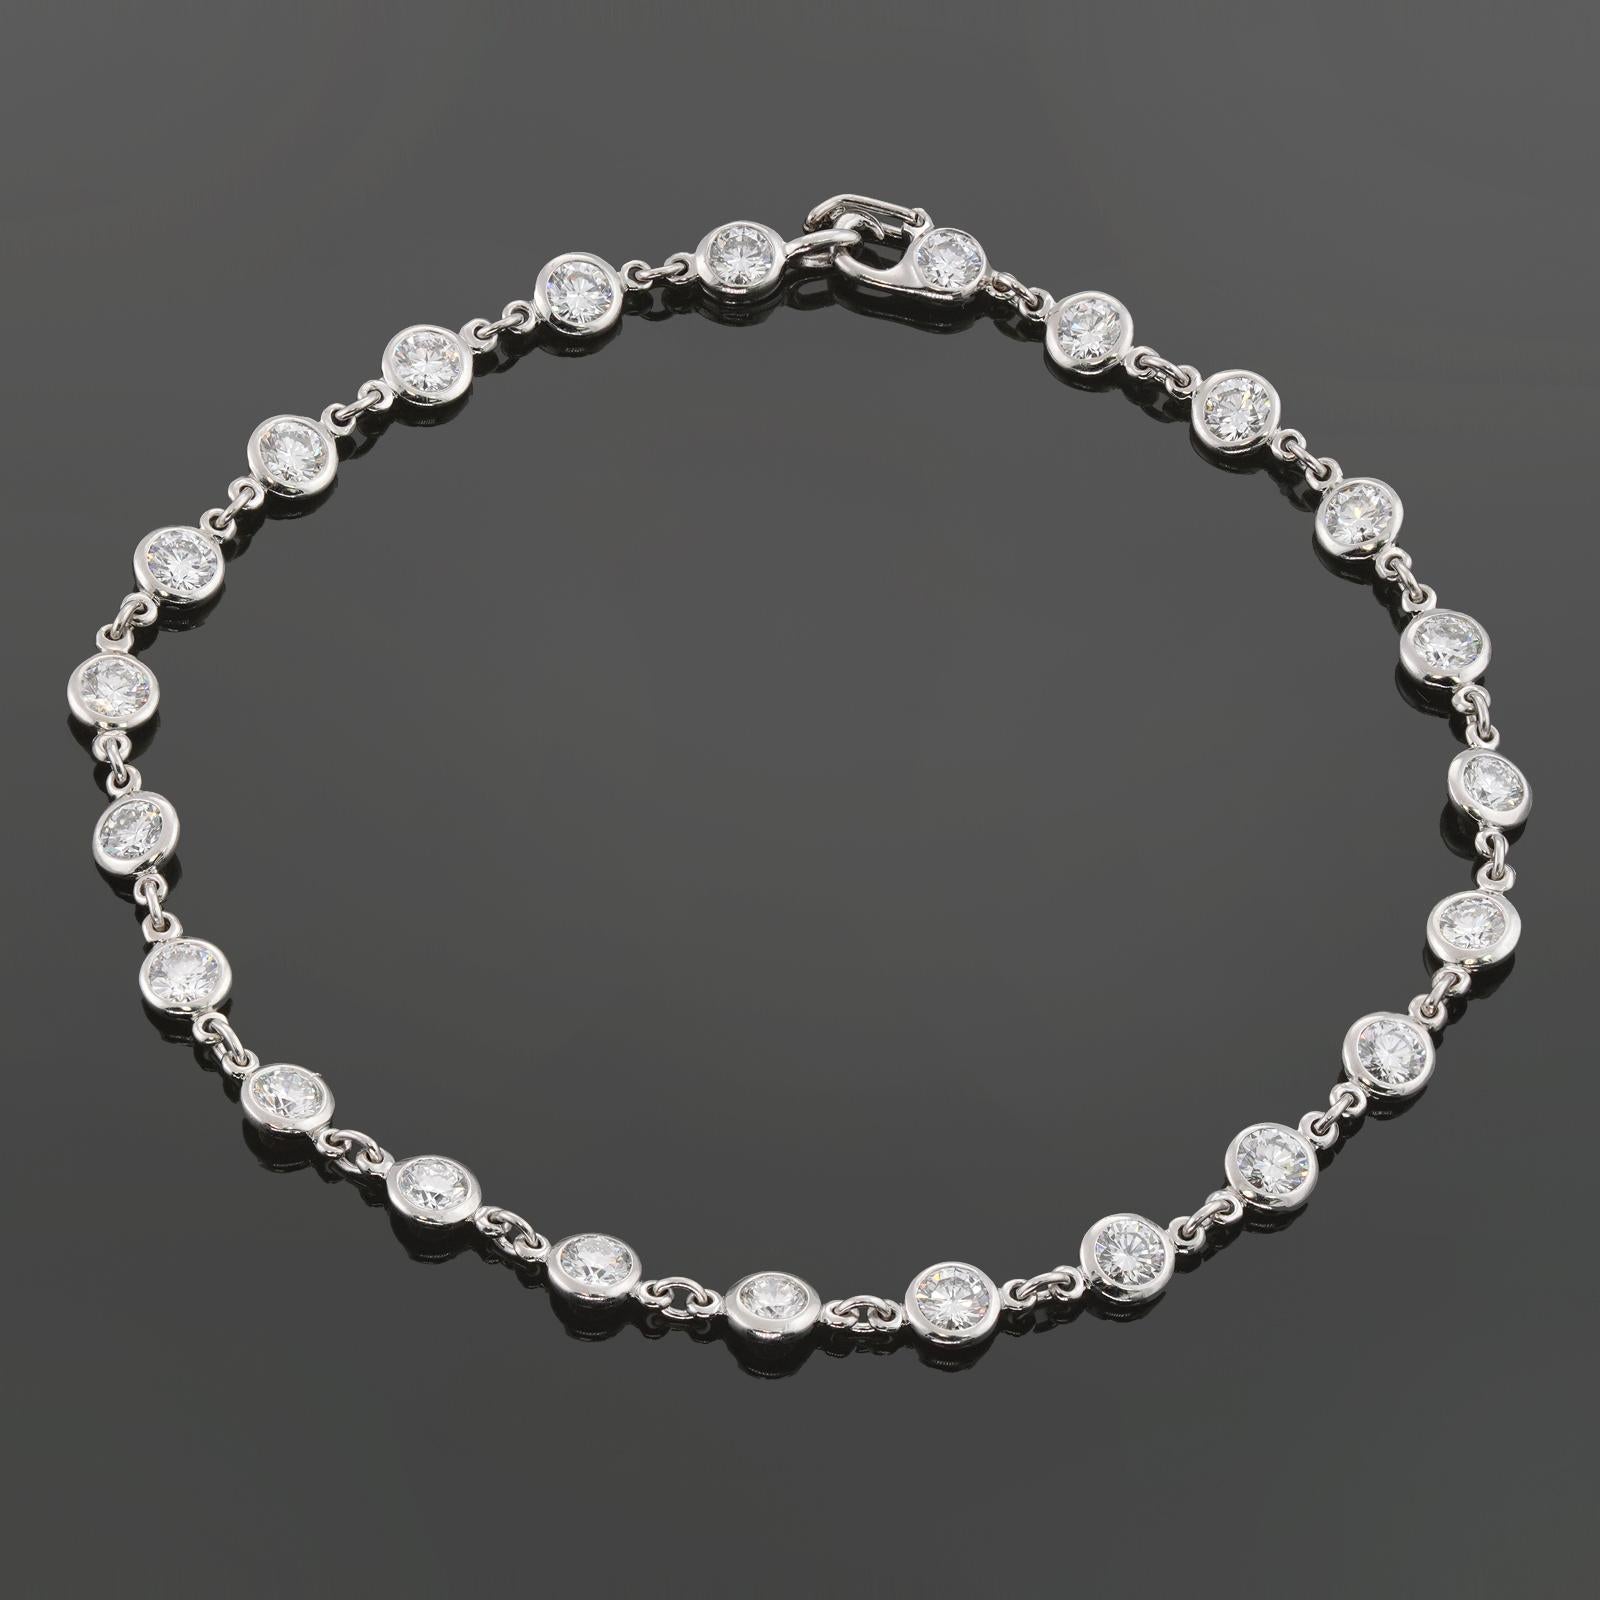 Diese exquisite Tiffany & Co. Das Armband Diamond by the Yard ist aus Platin gefertigt und mit 23 runden E-F-G VVS1-VVS2-Diamanten im Brillantschliff mit einem geschätzten Gewicht von 2,30 Karat besetzt. Hergestellt in den Vereinigten Staaten um